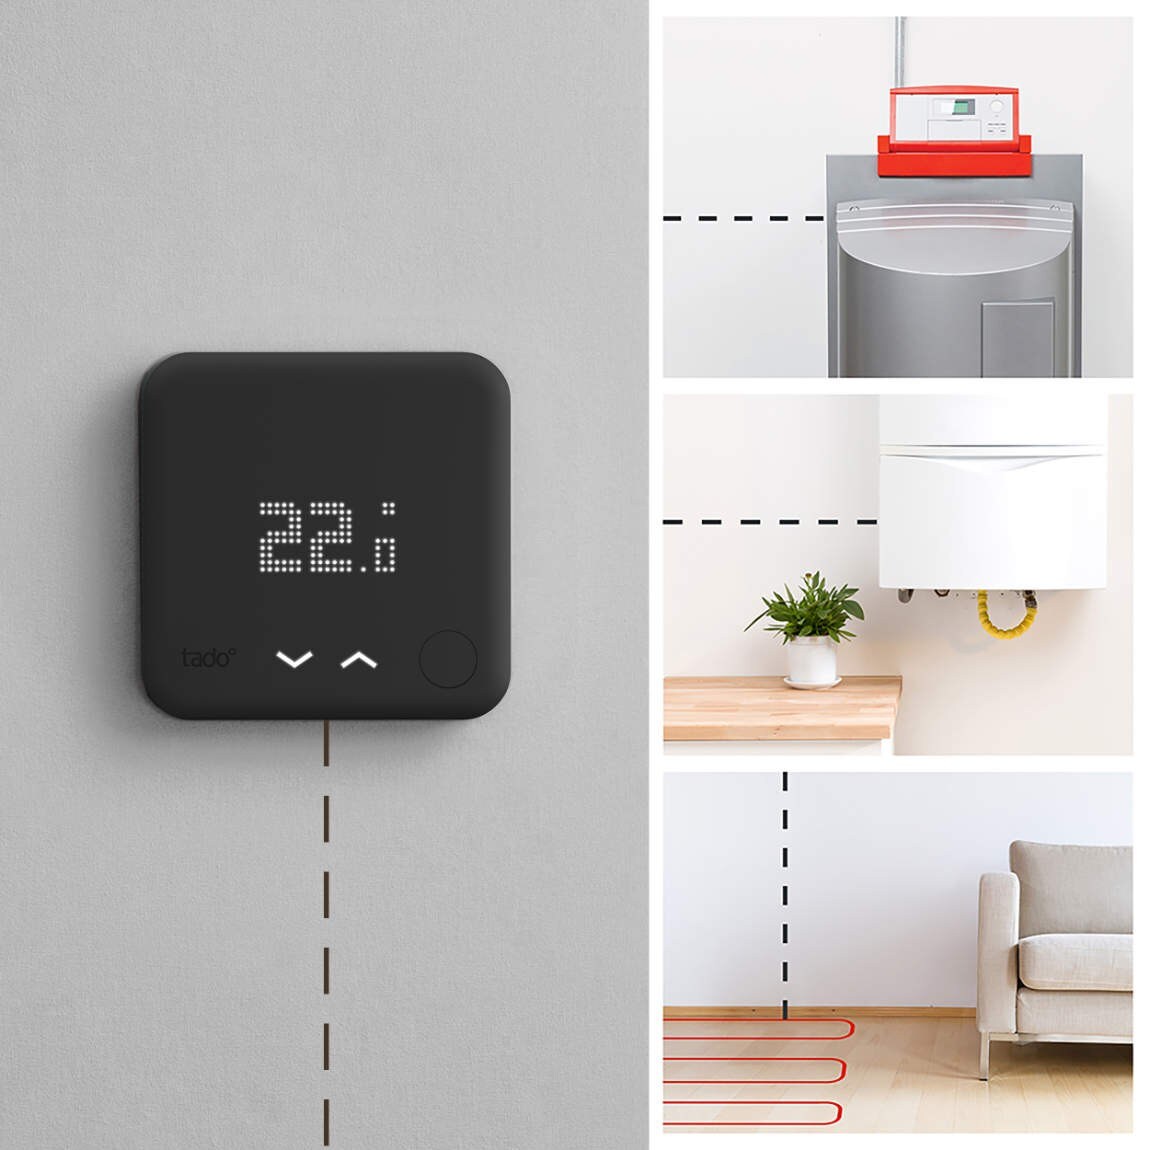 tado° Smartes Thermostat - Zusatzprodukt für intelligente  Heizungssteuerung, sw ++ Cyberport